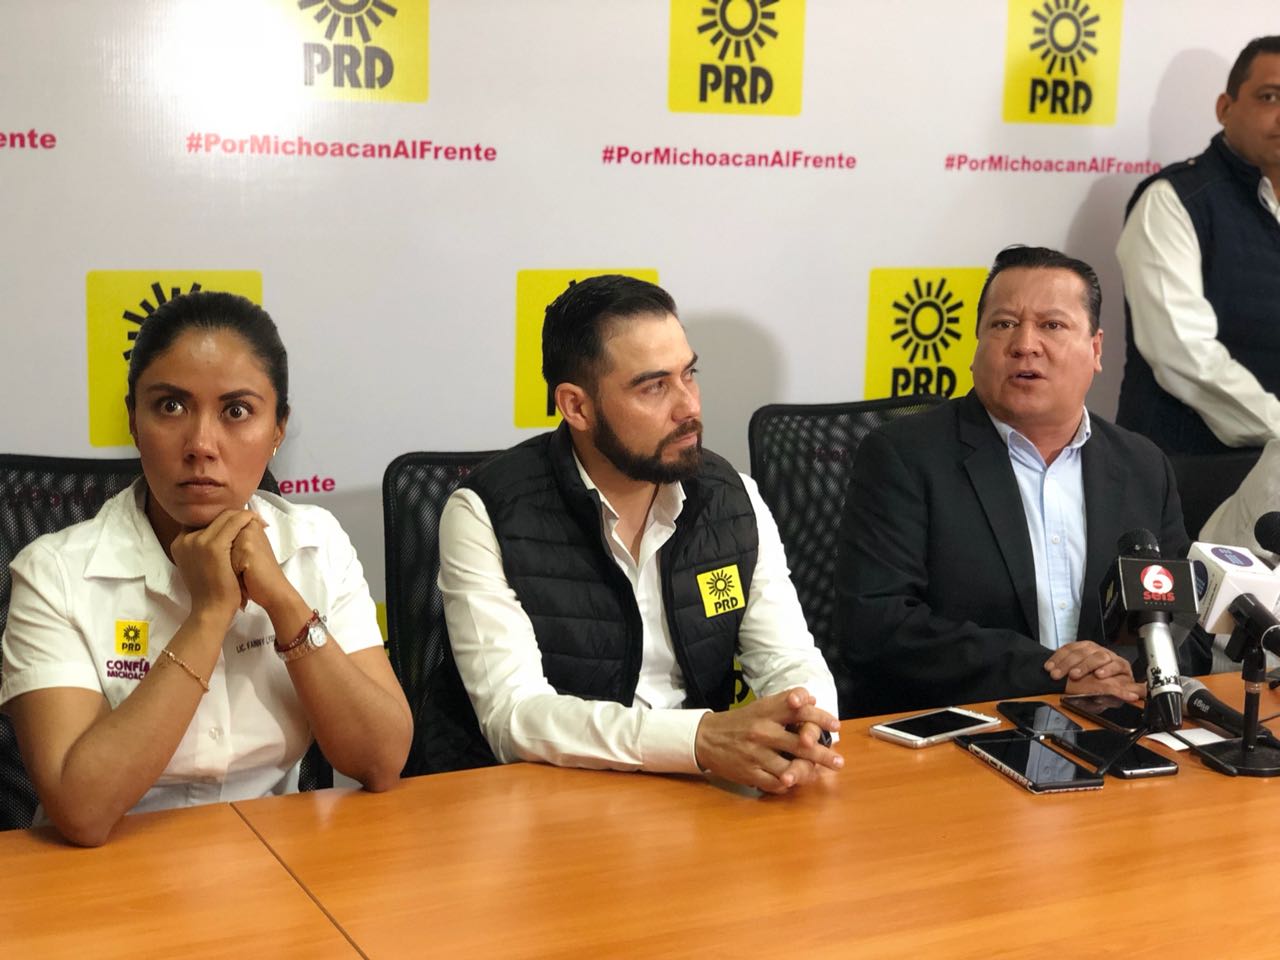  Único alcalde de Morena en Michoacán se une al PRD: García Avilés